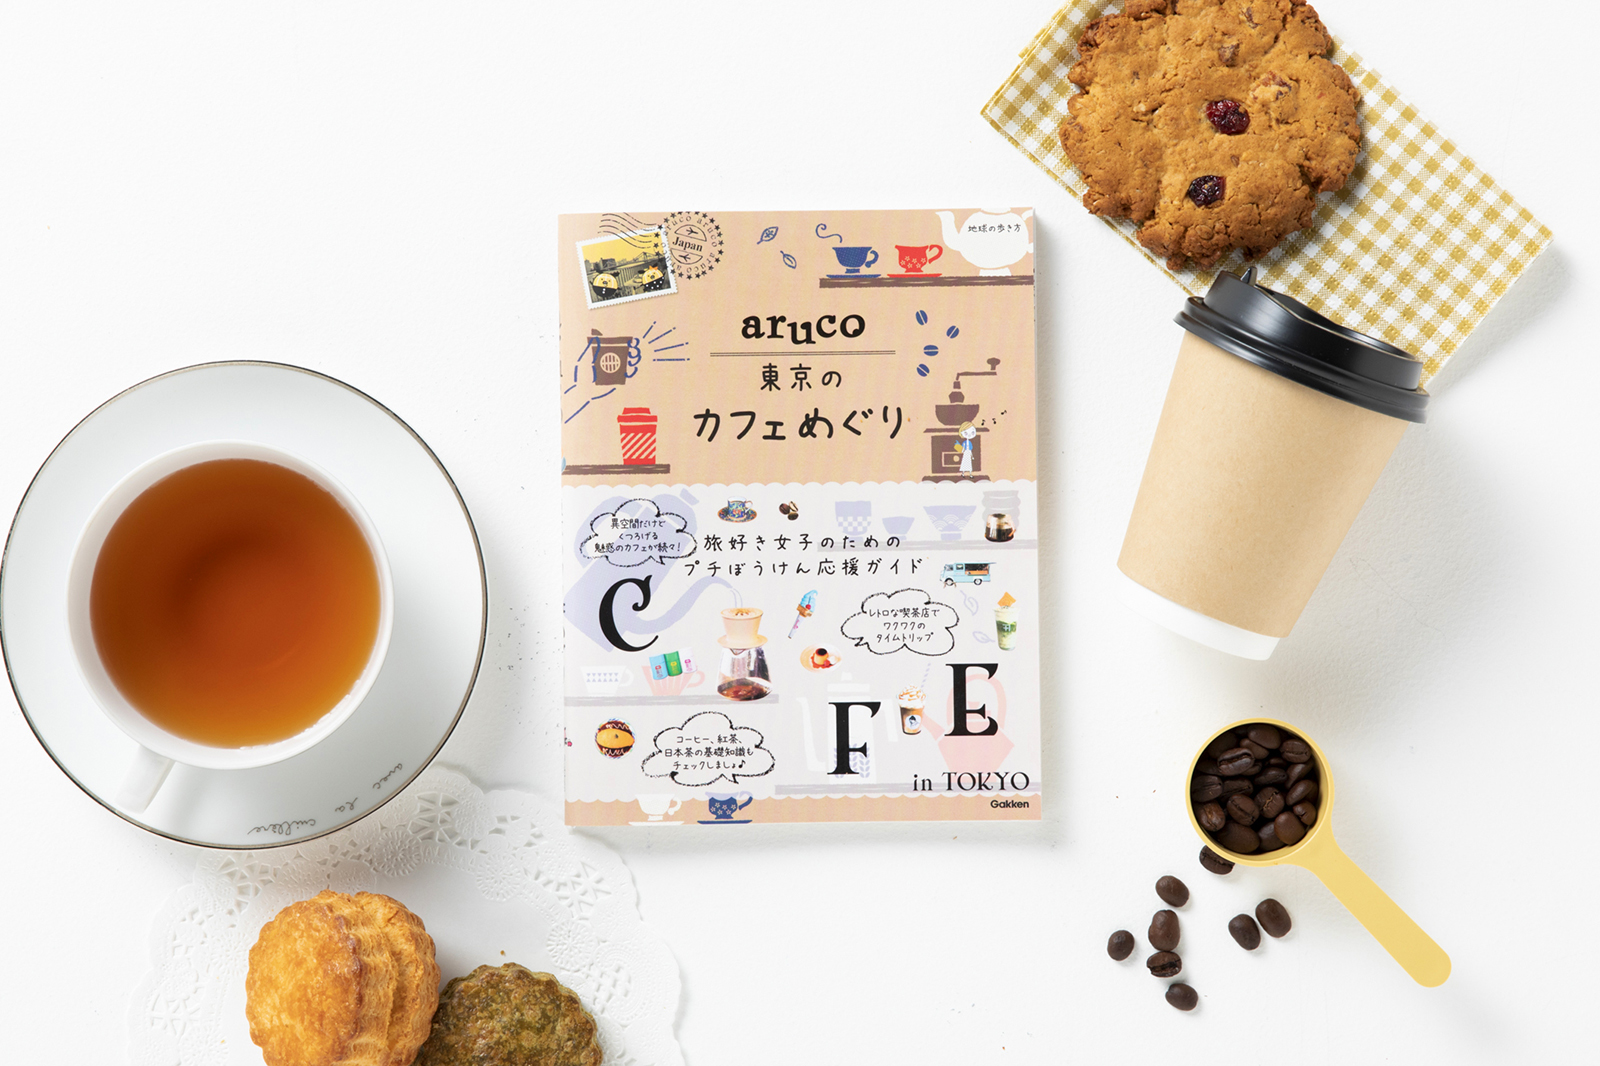 旅するようにカフェを楽しもう！女子旅応援ガイドブック「地球の歩き方aruco」より『aruco東京のカフェめぐり』が登場。約200物件掲載のカフェバイブル！のサブ画像1_東京のイチオシカフェ情報が満載の女子旅ガイド